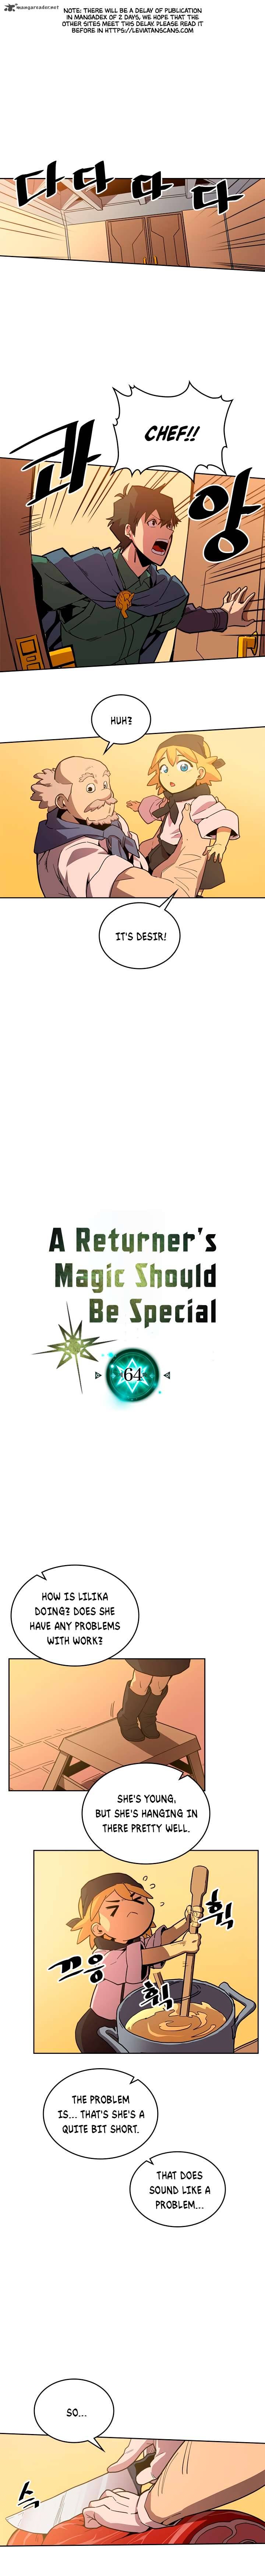 A Returner's Magic Should Be Special 64